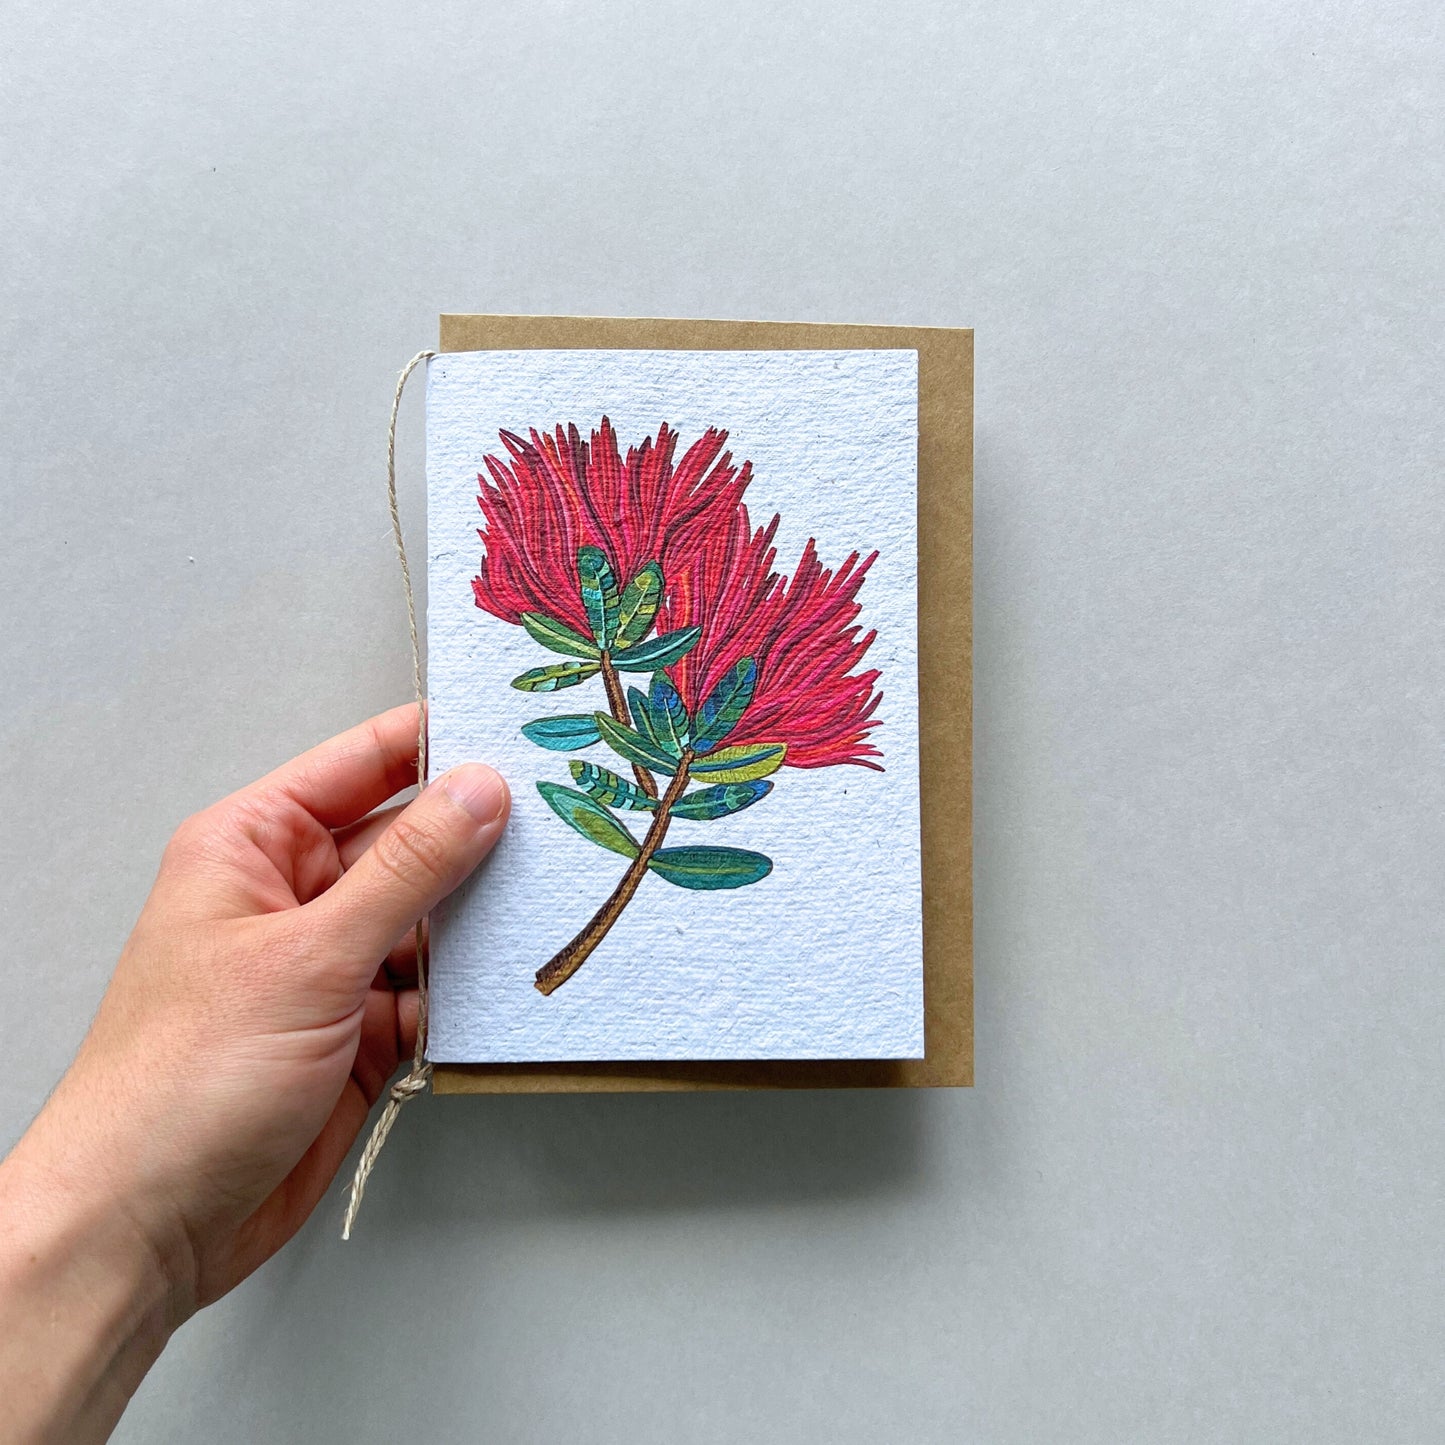 The Pohutukawa Flower Plantable and Reusable Greeting Card